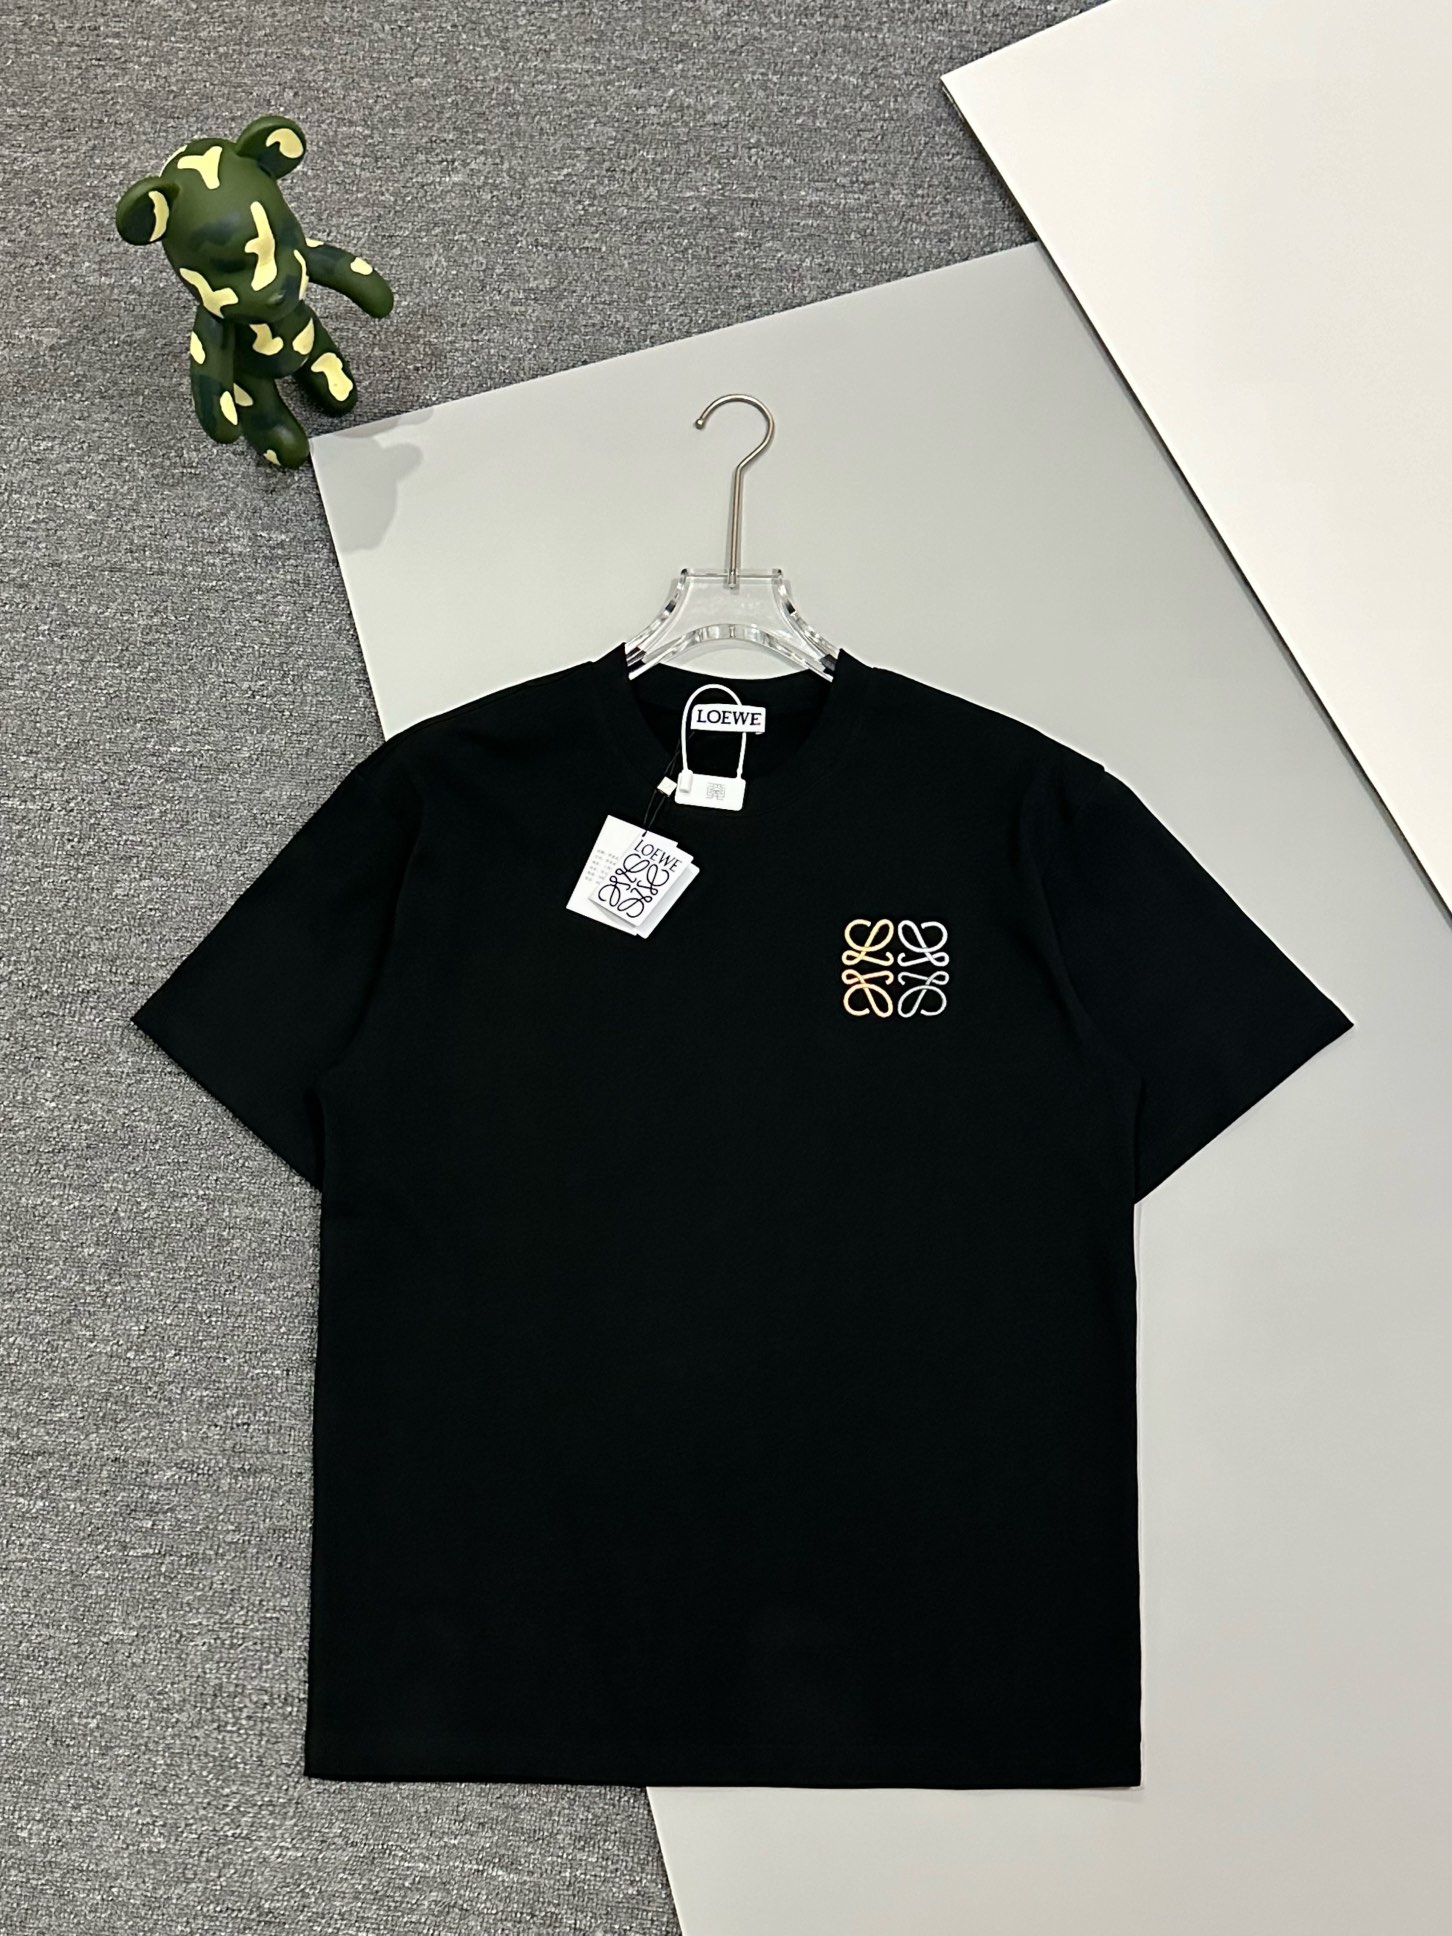 Loewe Clothing T-Shirt Black White Embroidery Unisex Cotton Double Yarn Short Sleeve